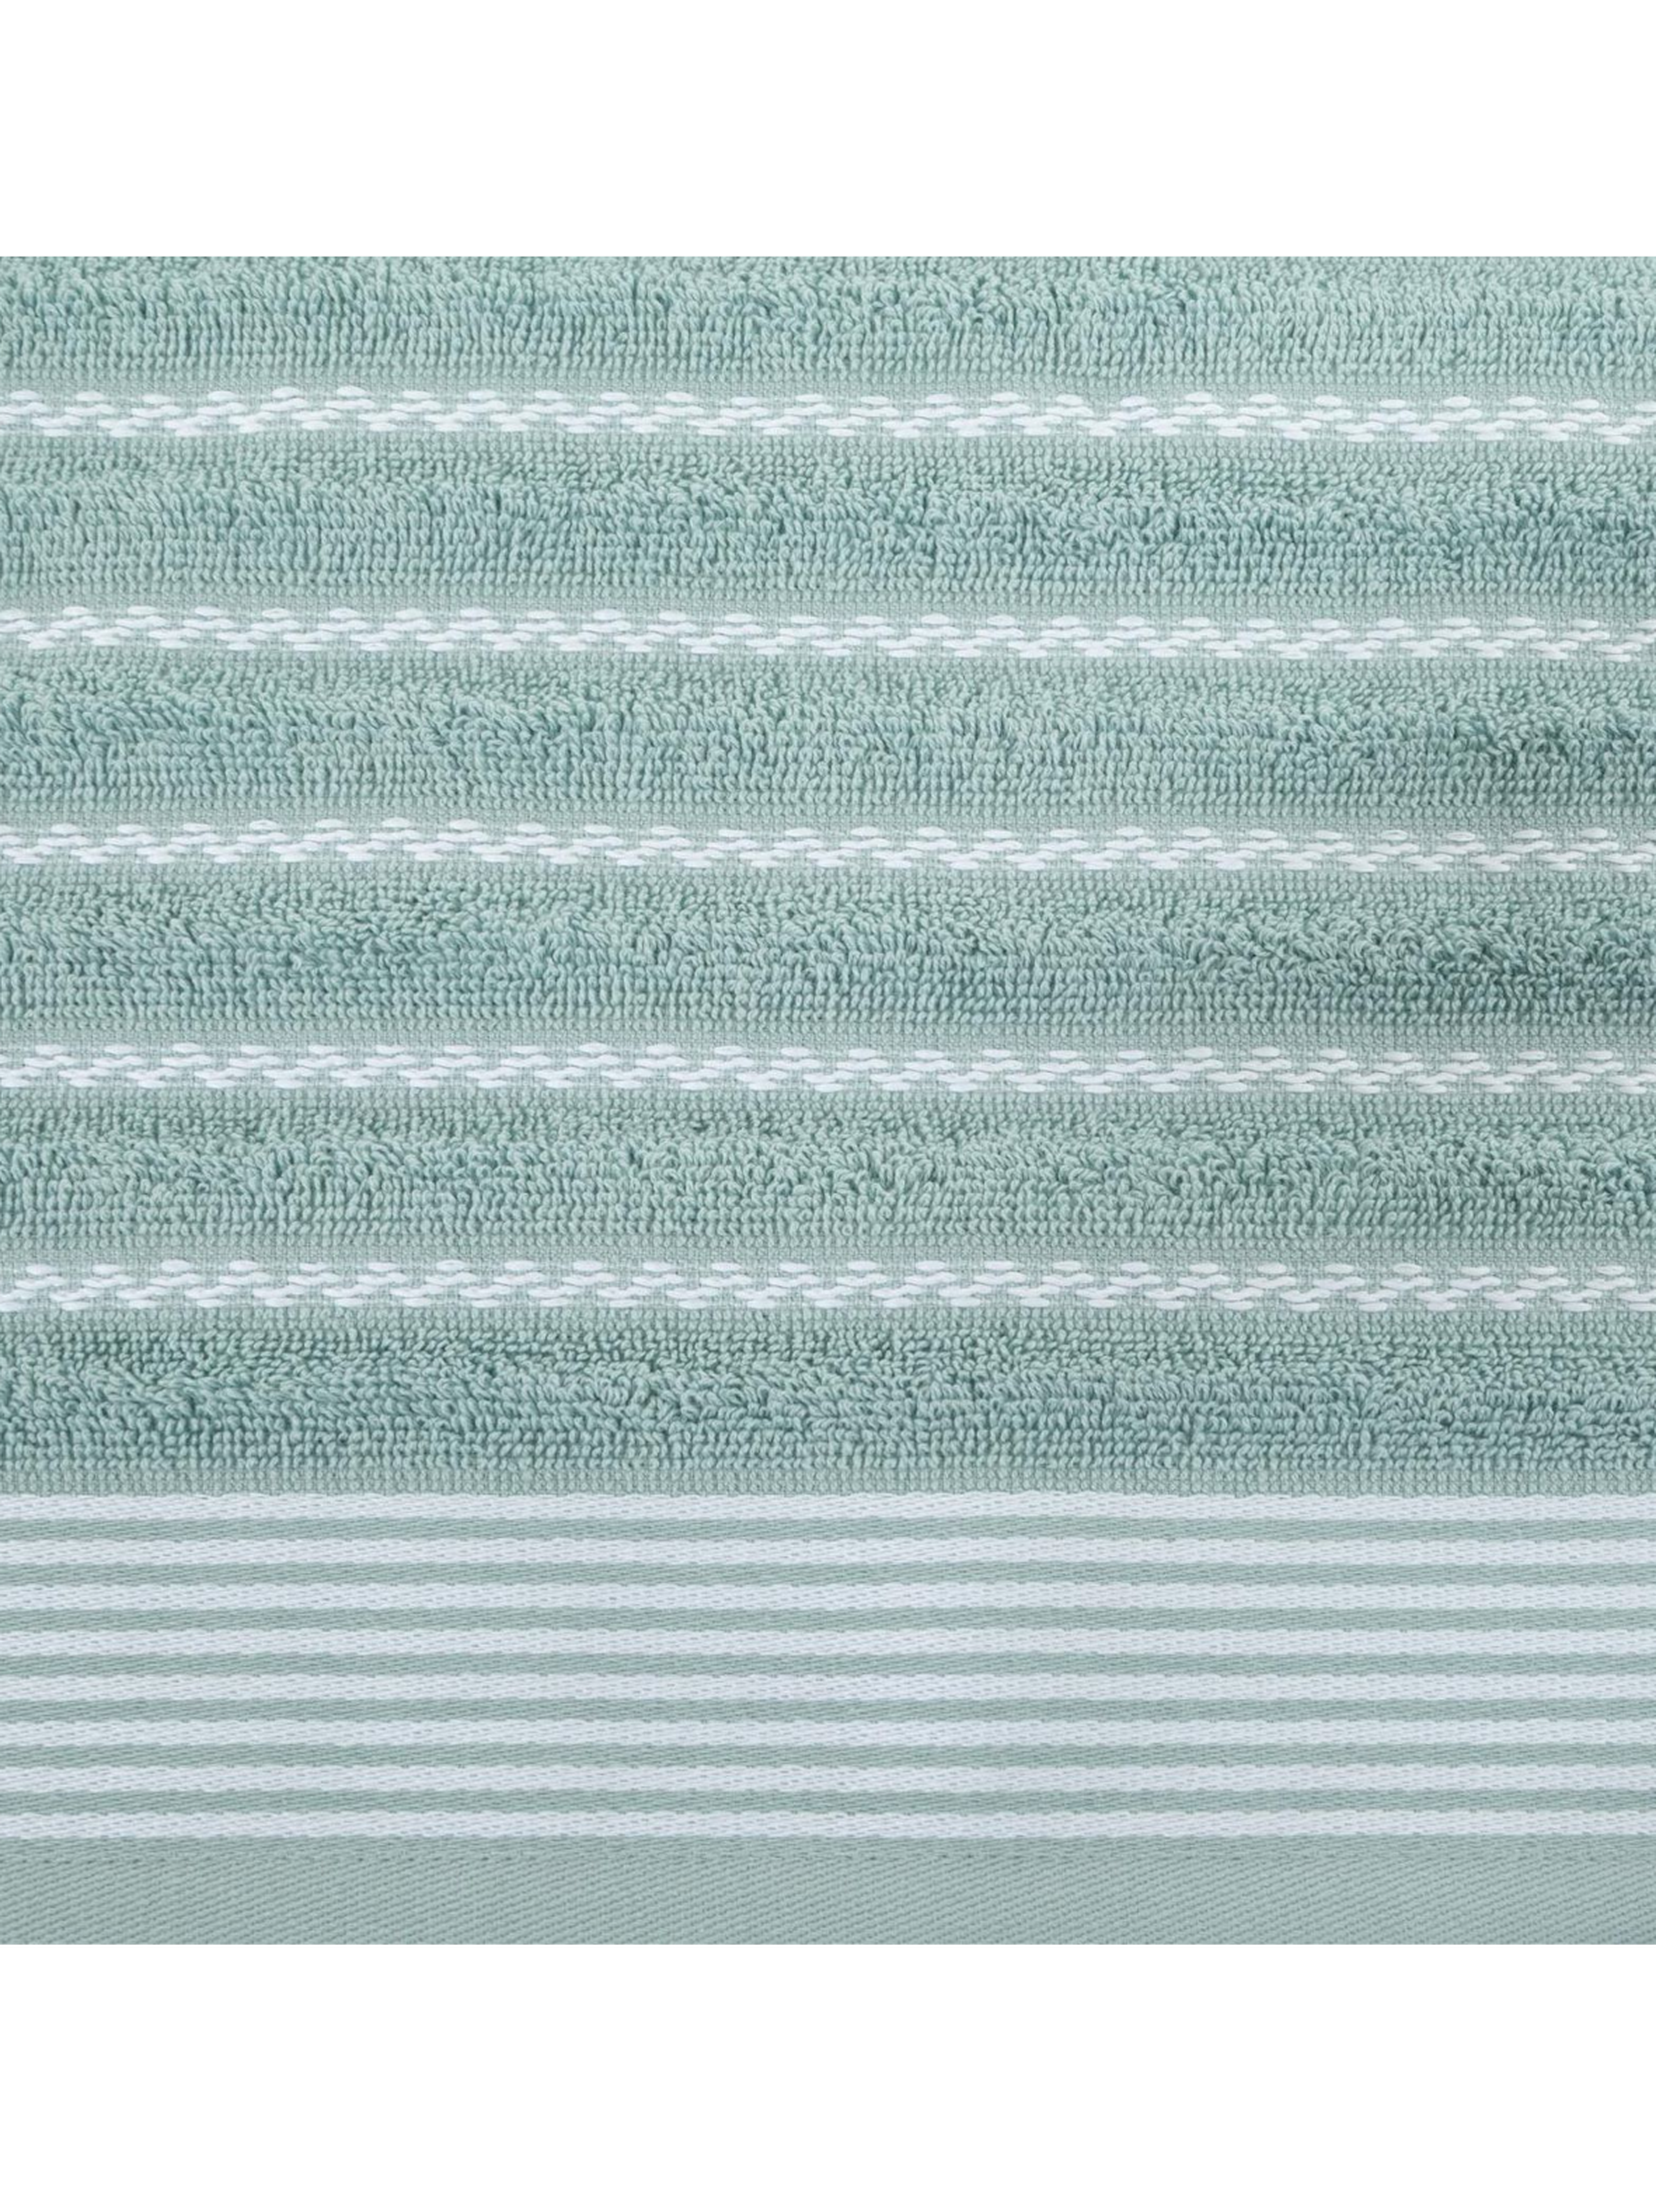 Ręcznik d91 leo (05) 70x140 cm miętowy